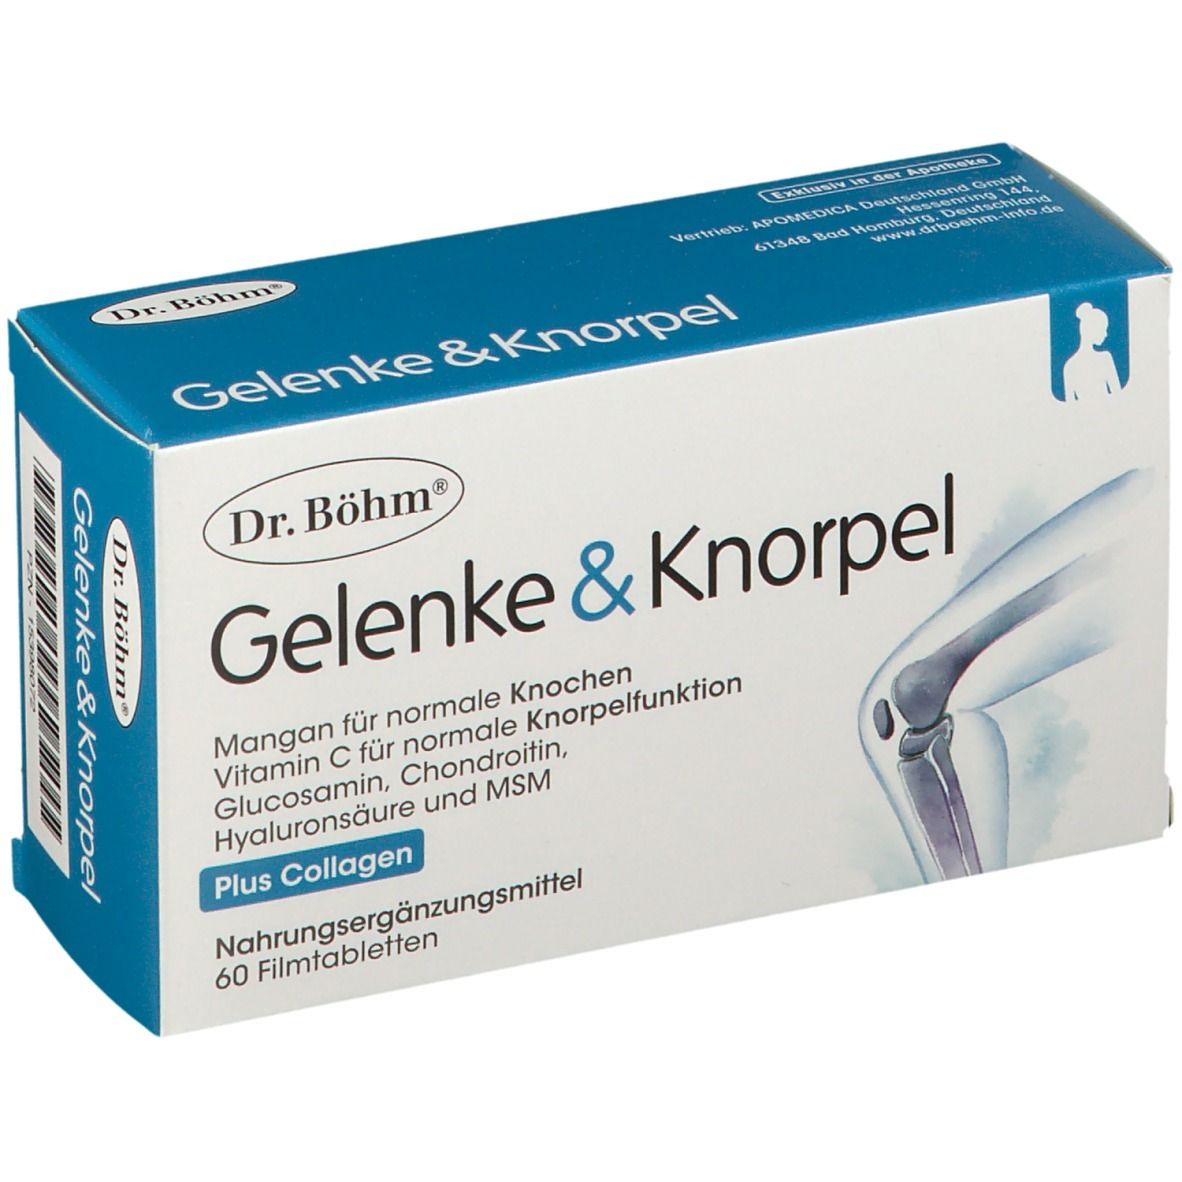 Dr. Böhm® Gelenke & Knorpel